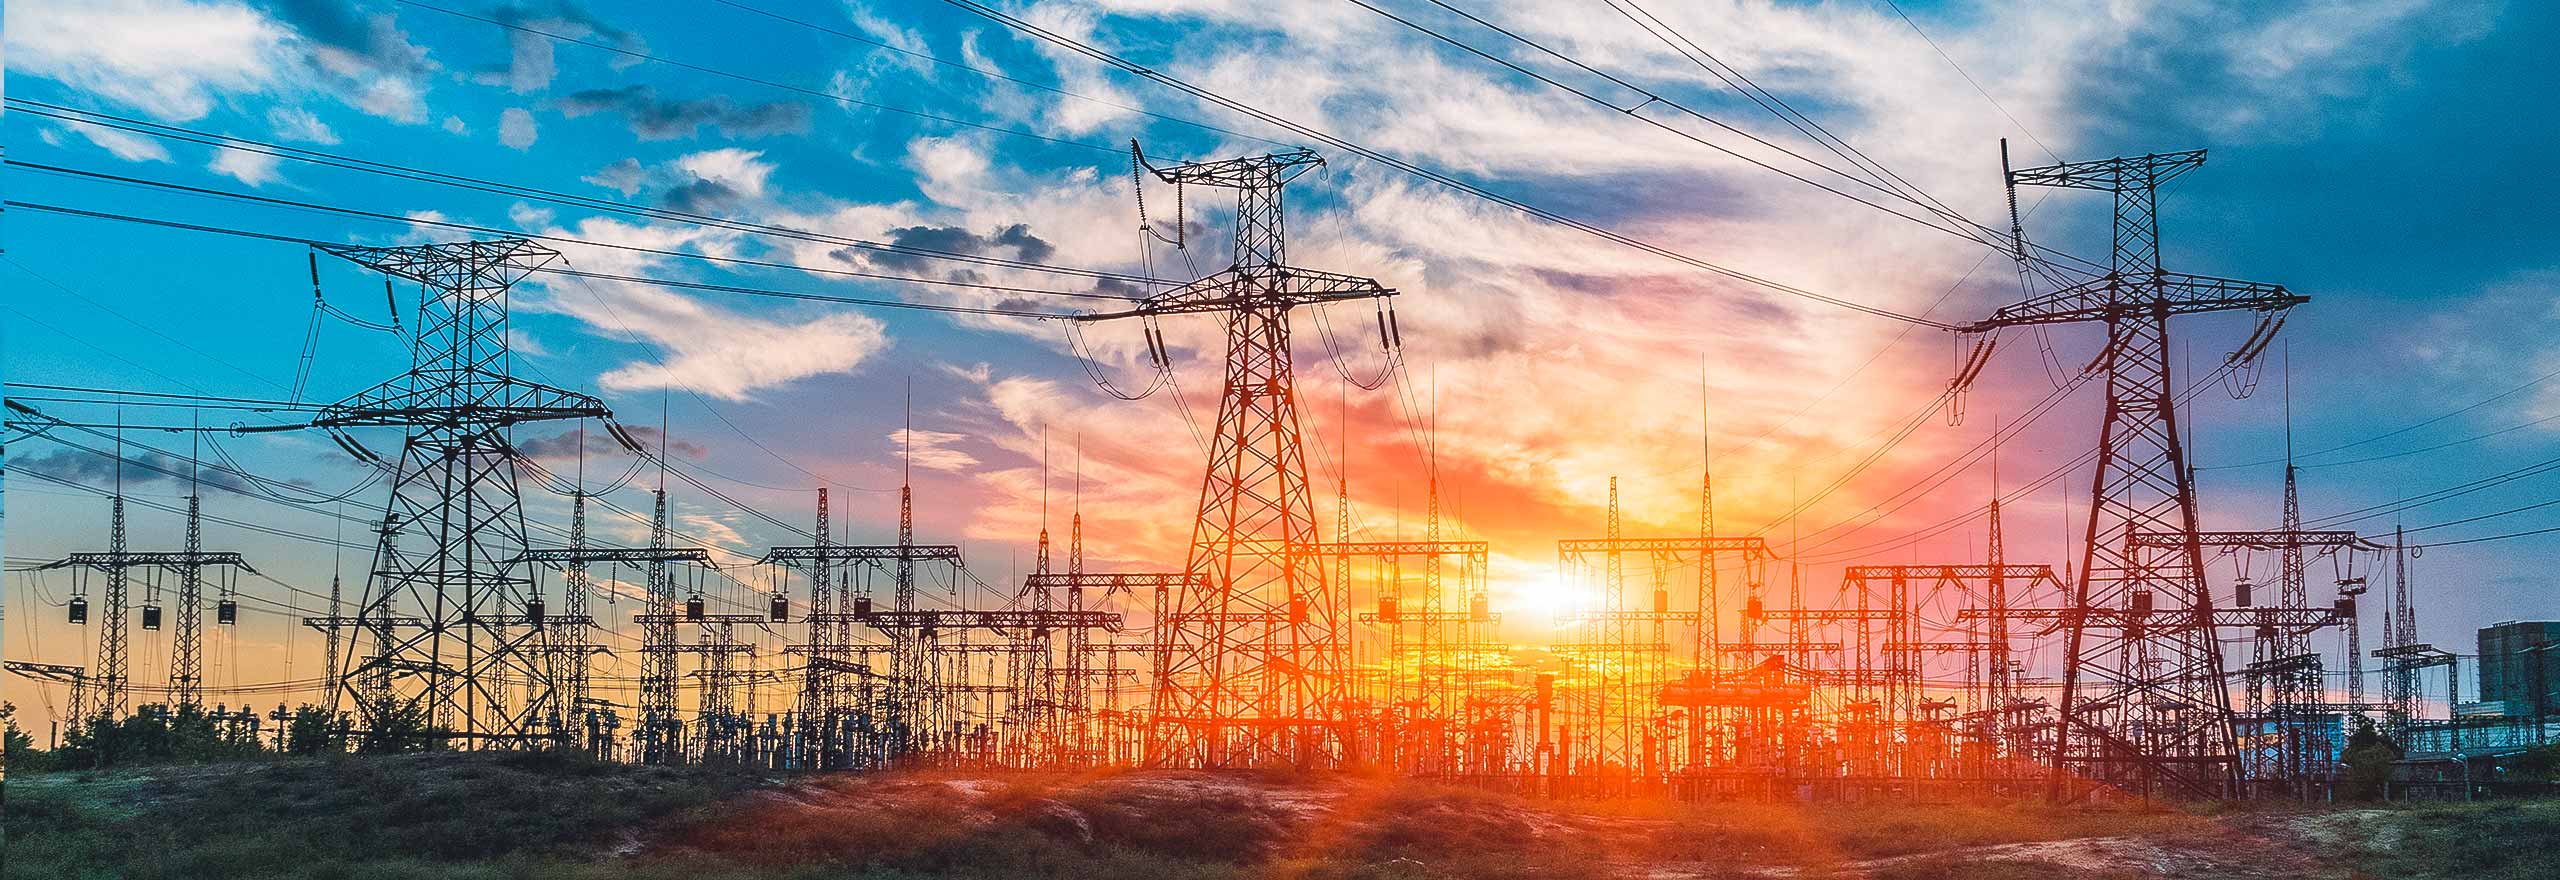 Sottostazione elettrica di distribuzione con linee elettriche e trasformatori al tramonto